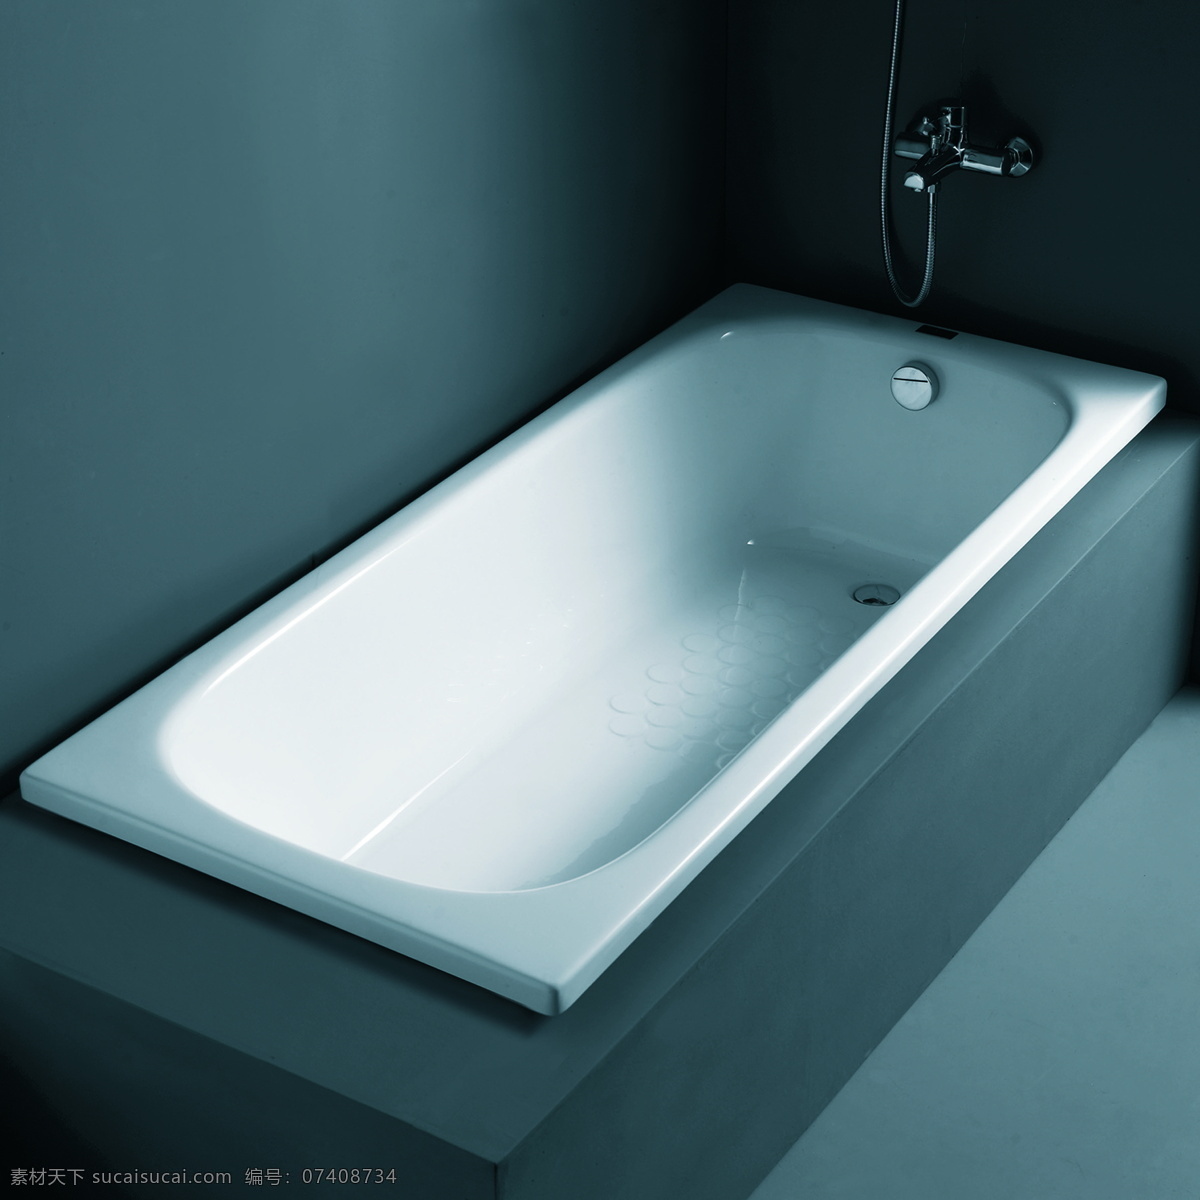 卫浴 浴缸 地砖 建筑园林 摄影图库 室内摄影 水龙头 卫浴浴缸 装饰素材 室内设计